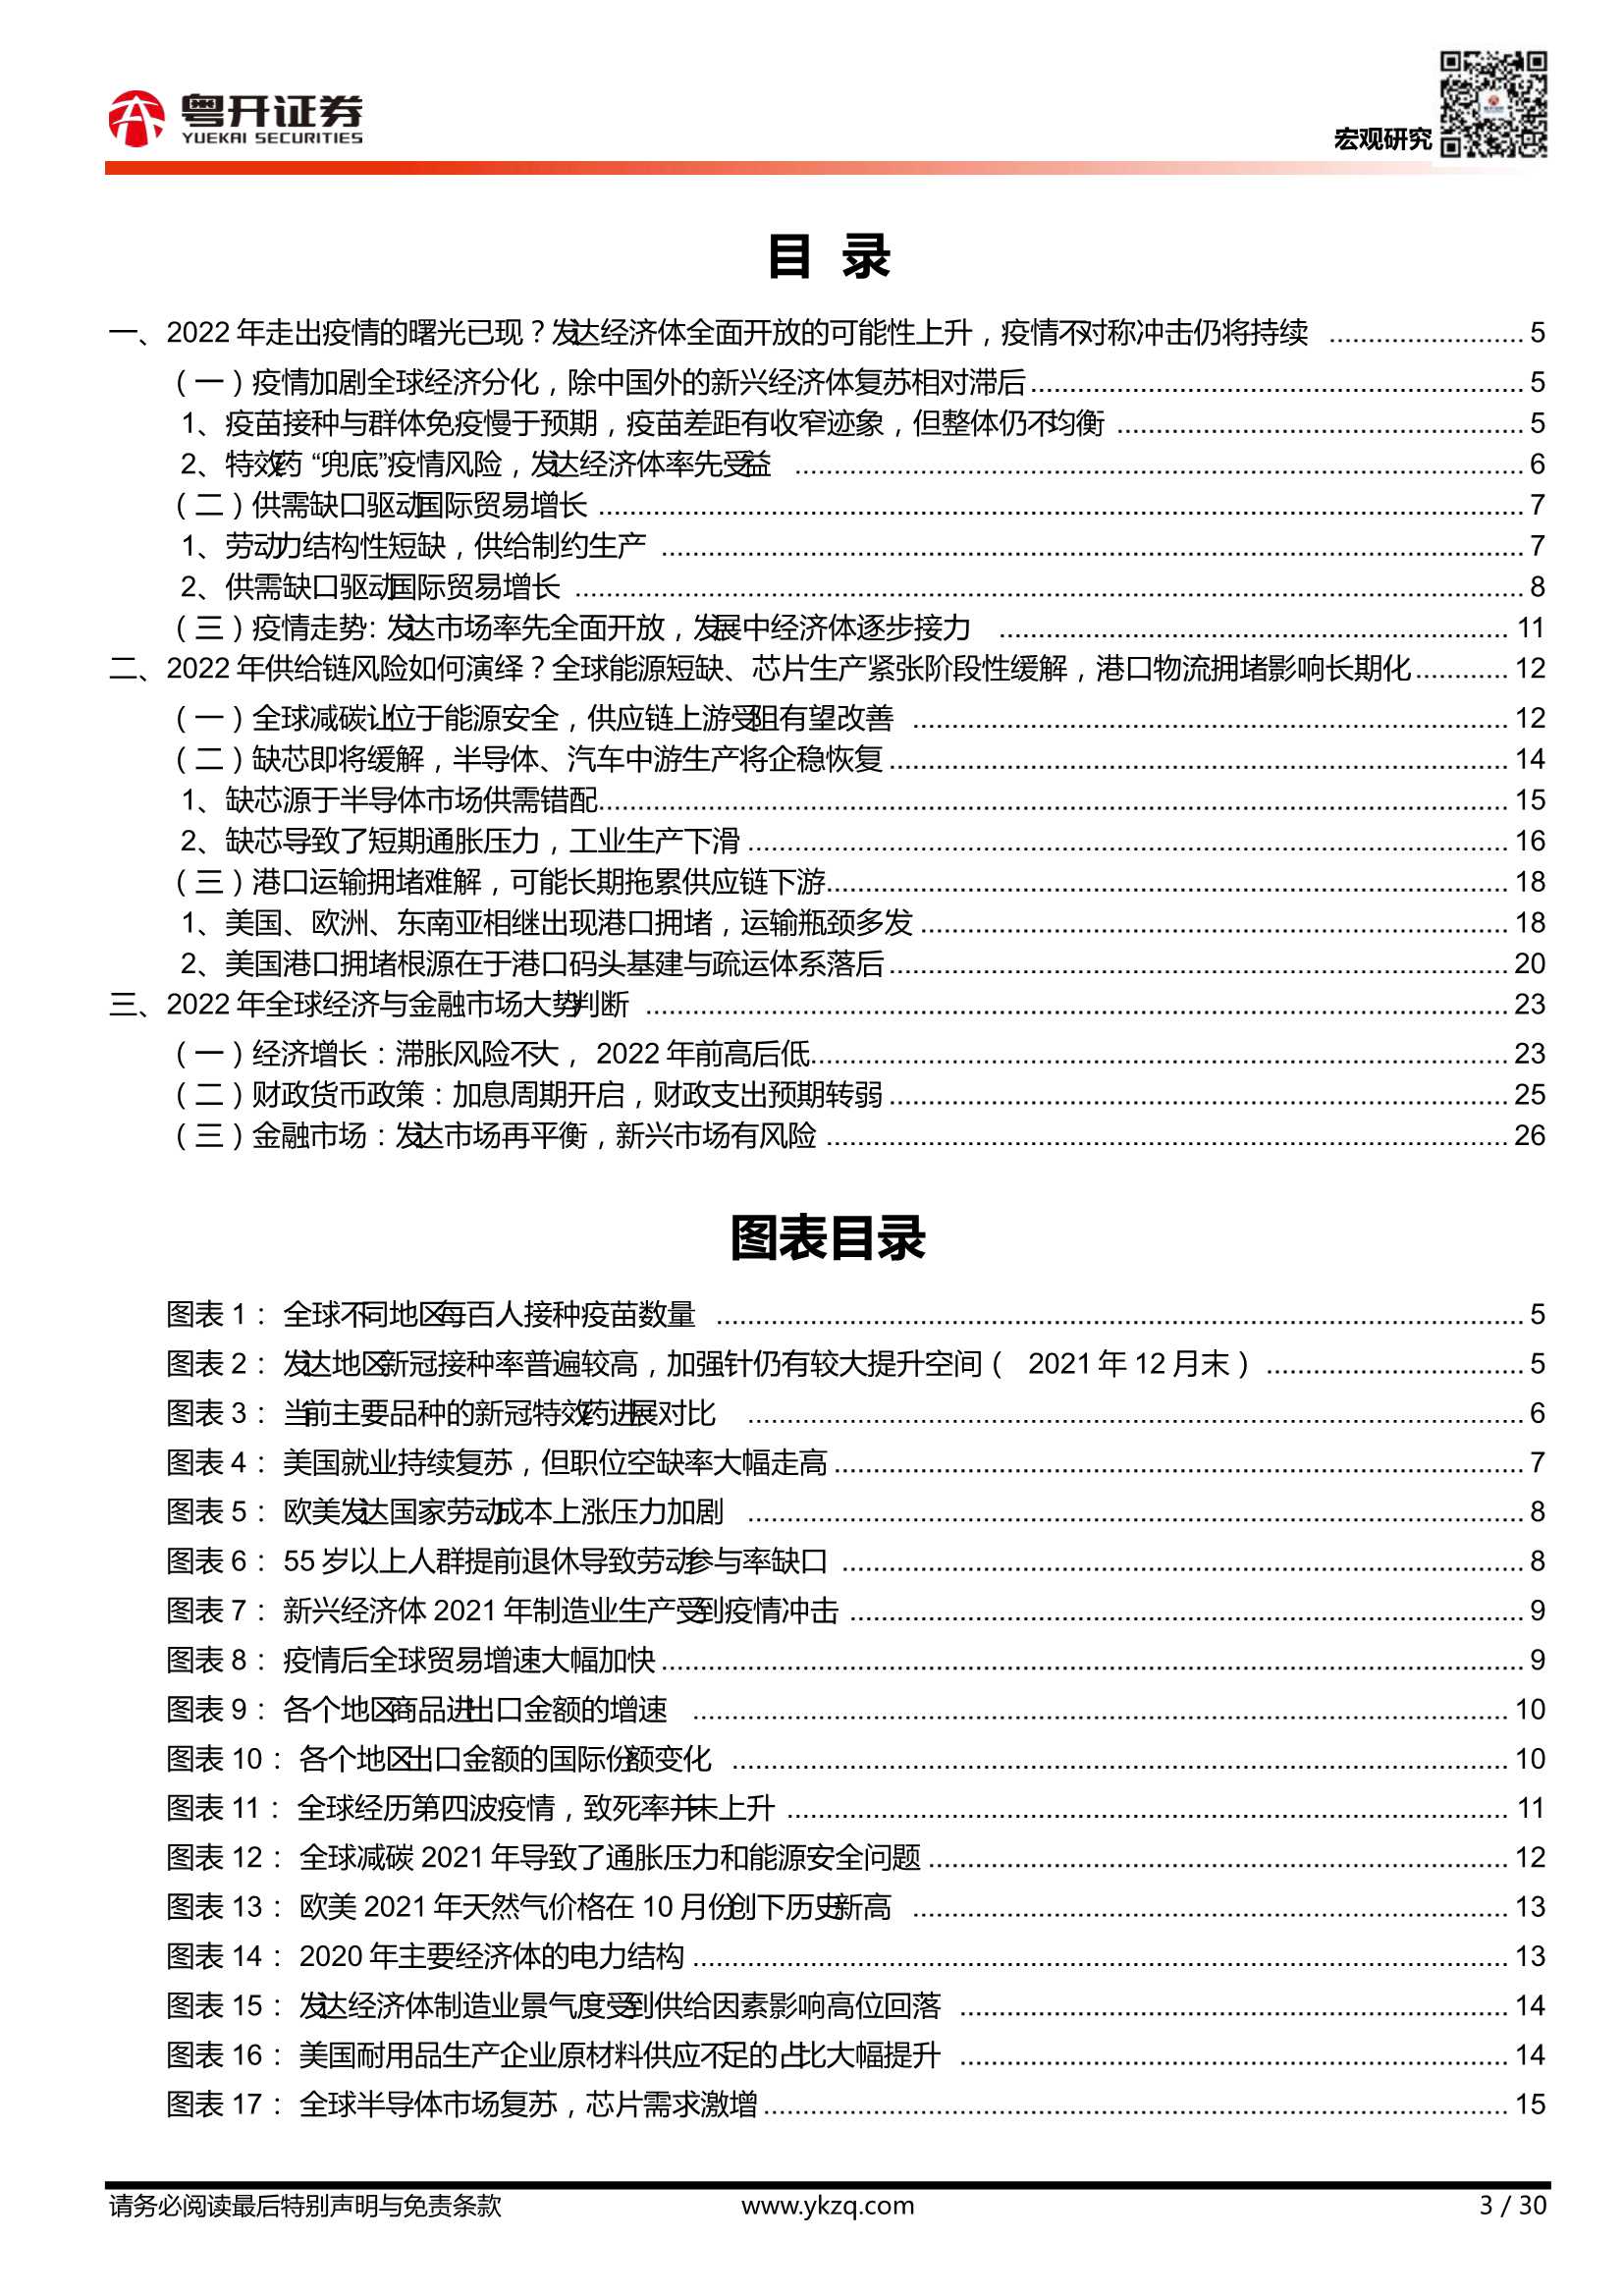 粤开证券-2022年全球经济展望：供给复苏、政策转舵-20220106-30页